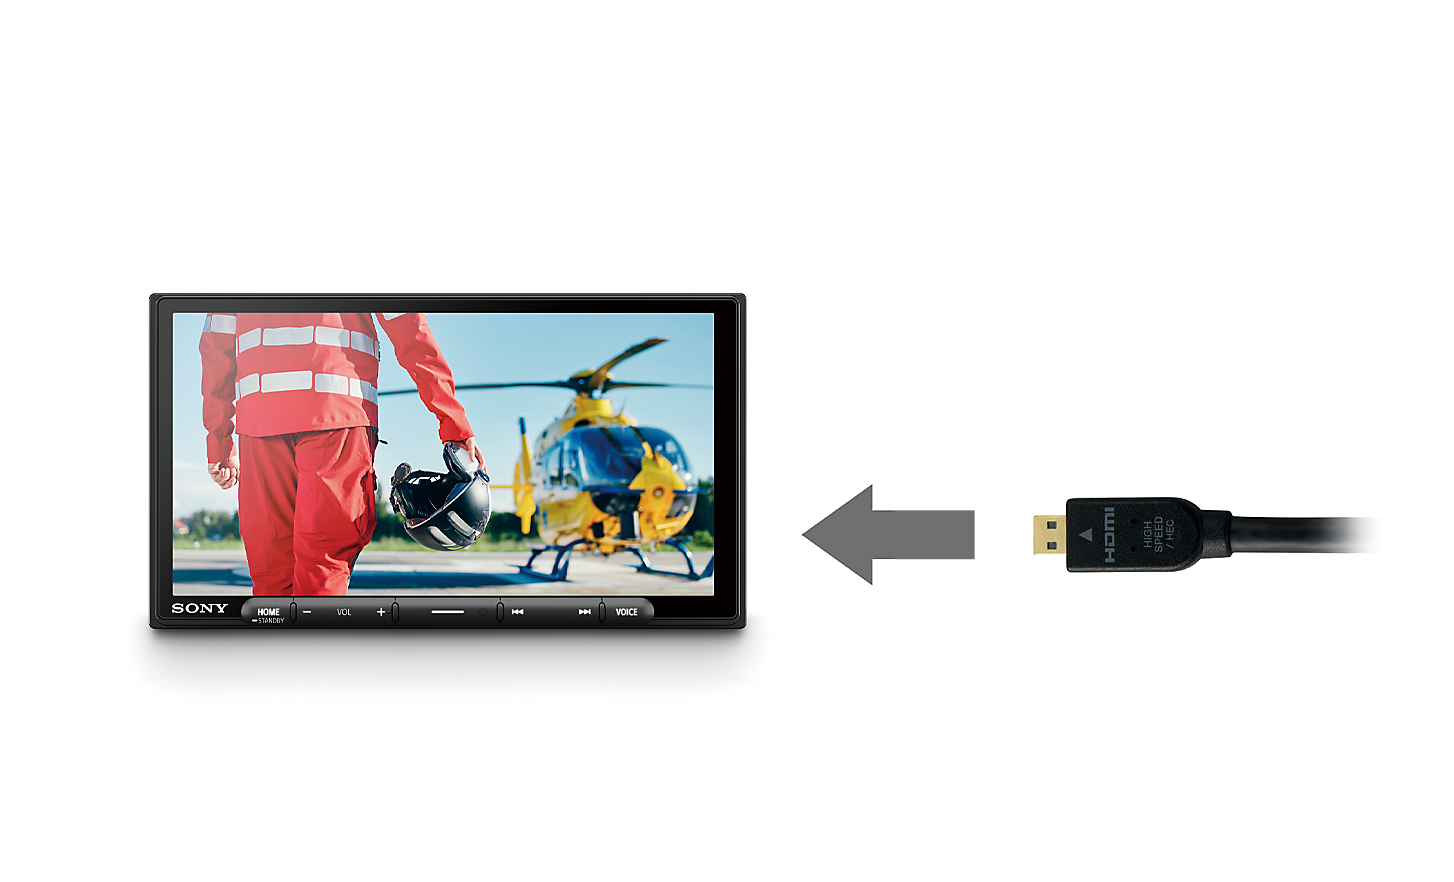 Slika HDMI kabela sa strelicom koja pokazuje prema uređaju XAV-AX6050 s pilotom i helikopterom na zaslonu